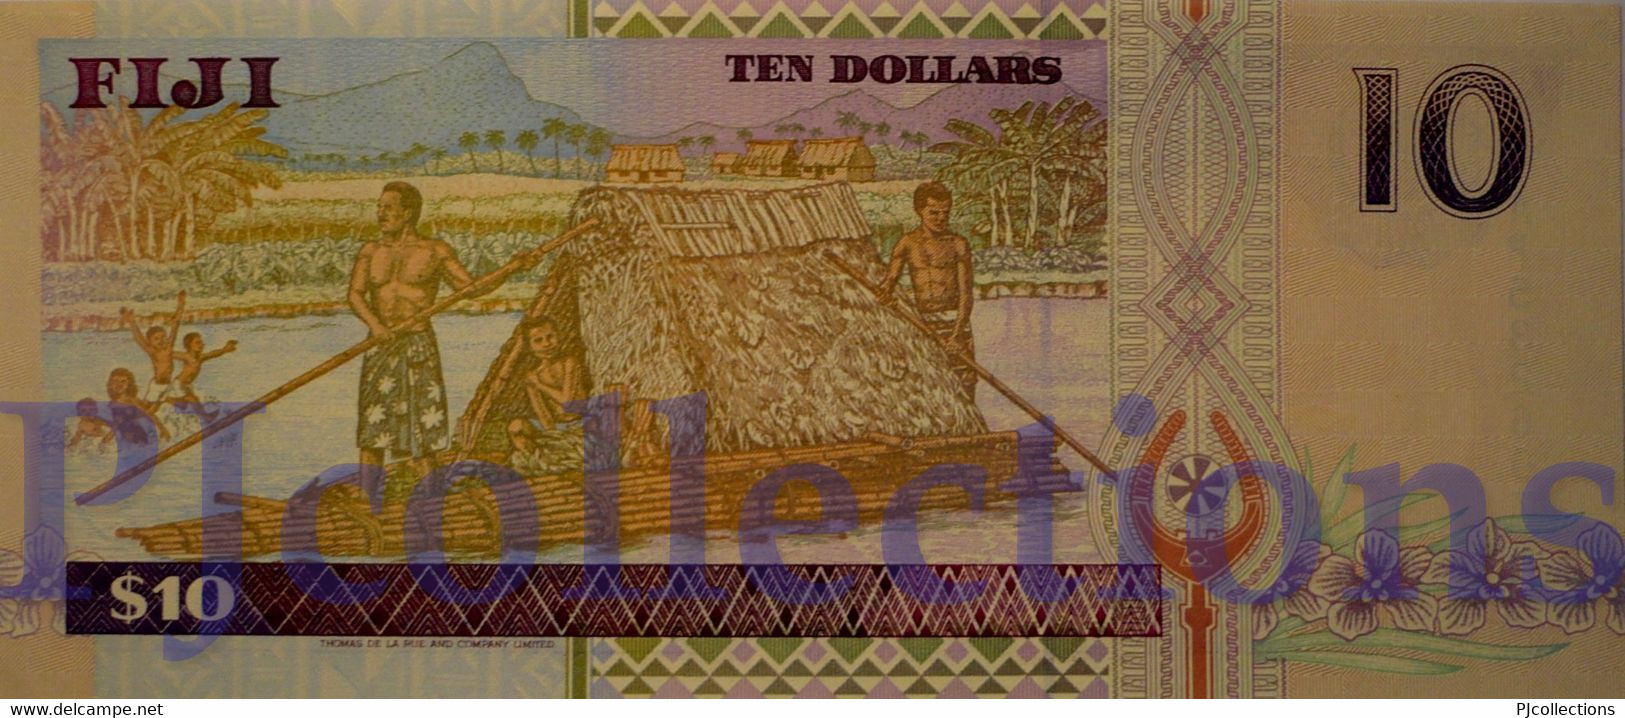 FIJI 10 DOLLARS 1996 PICK 98b UNC - Fidschi